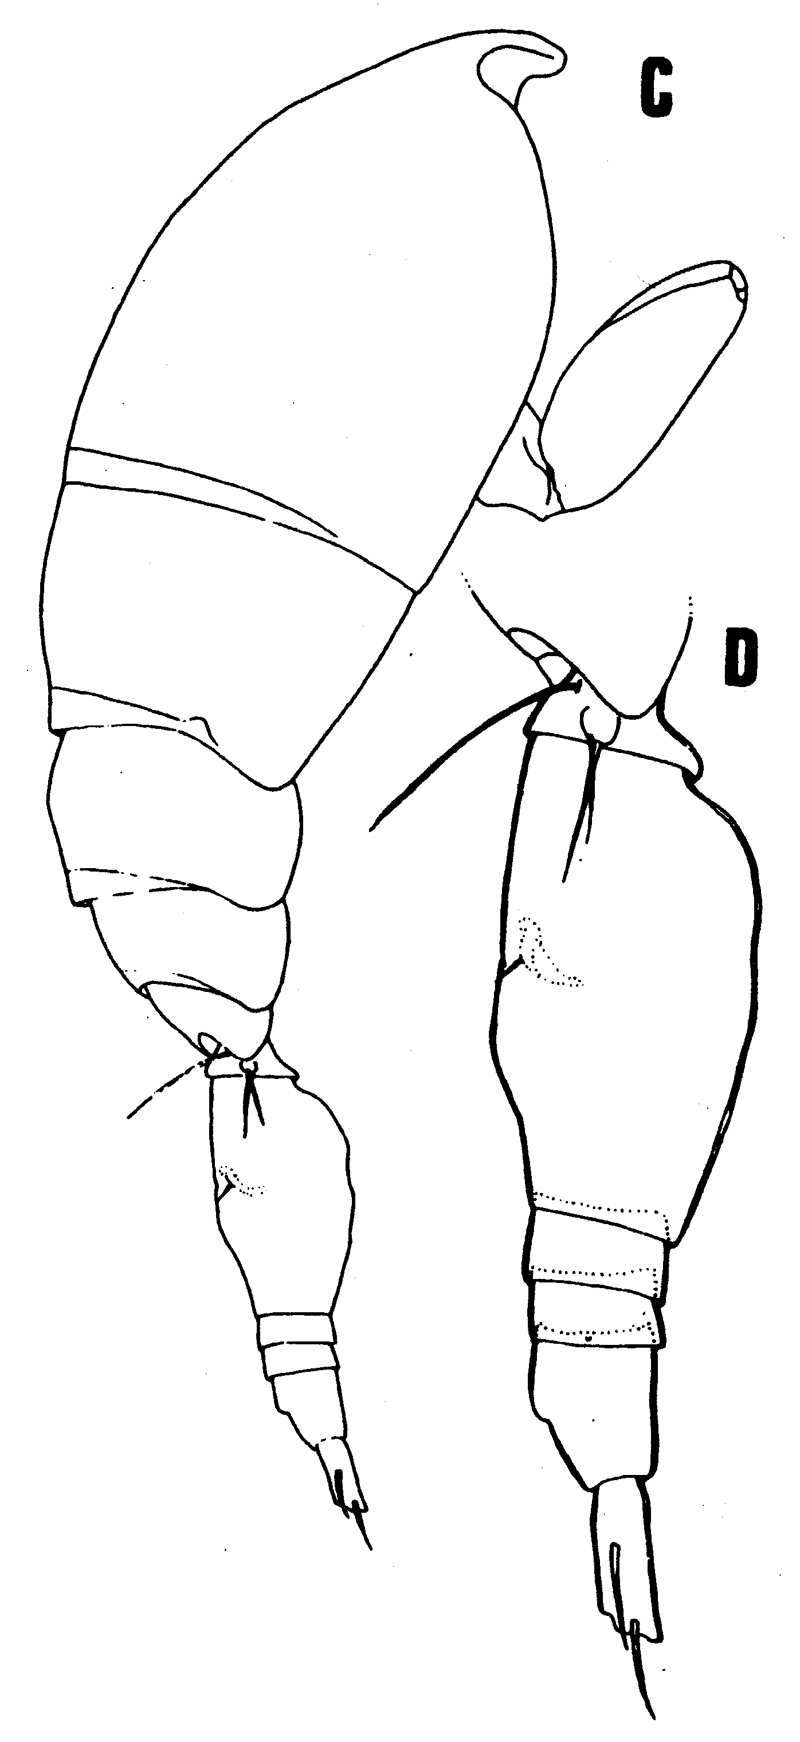 Species Oncaea illgi - Plate 1 of morphological figures